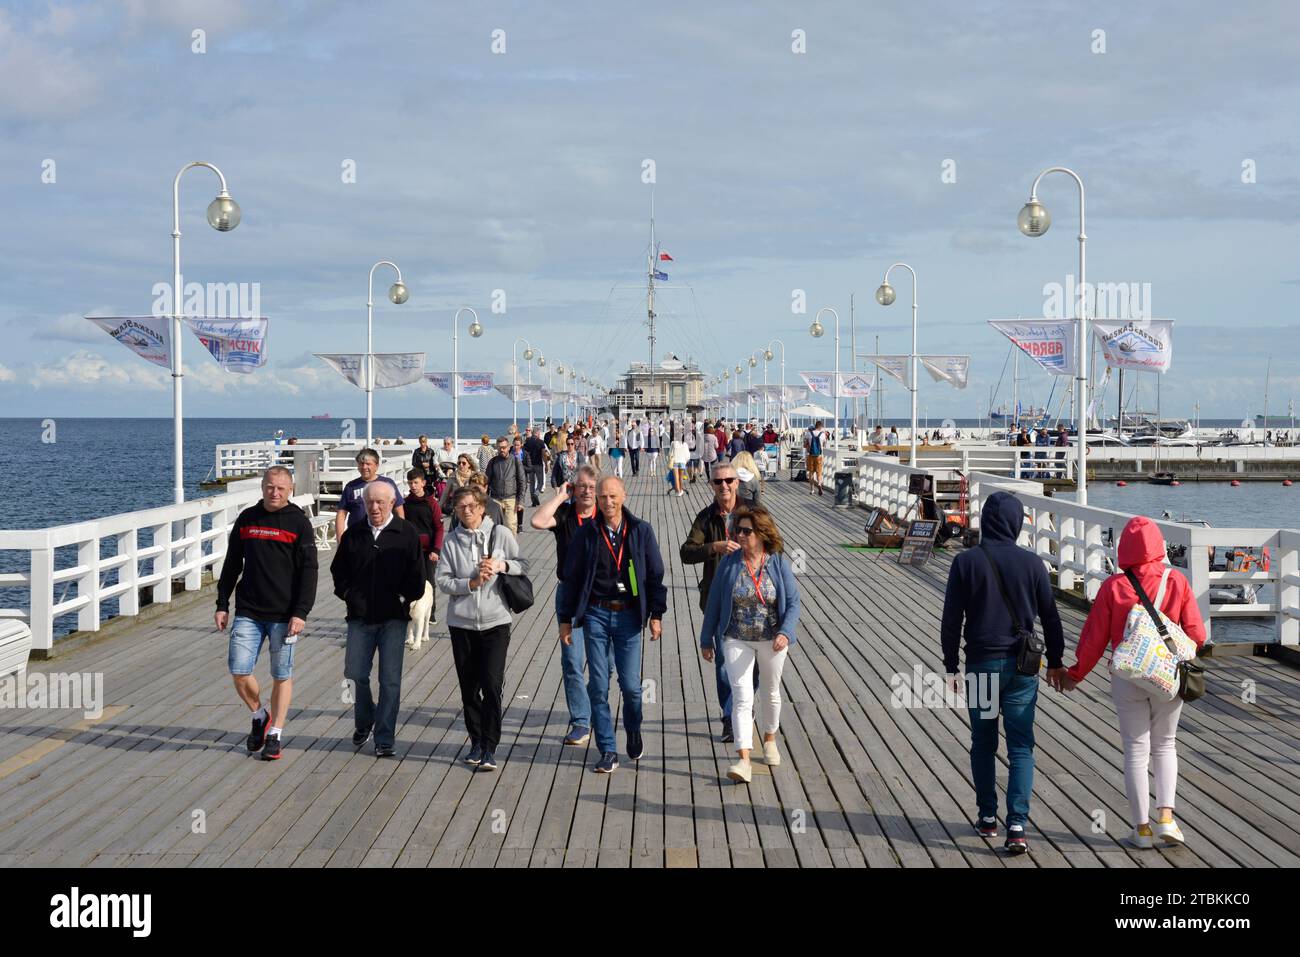 Menschen gehen sorglos auf dem Sopot Pier als längste hölzerne Meeresplanke Europas, Sopot, Pommern, Polen, Europa, EU Stockfoto